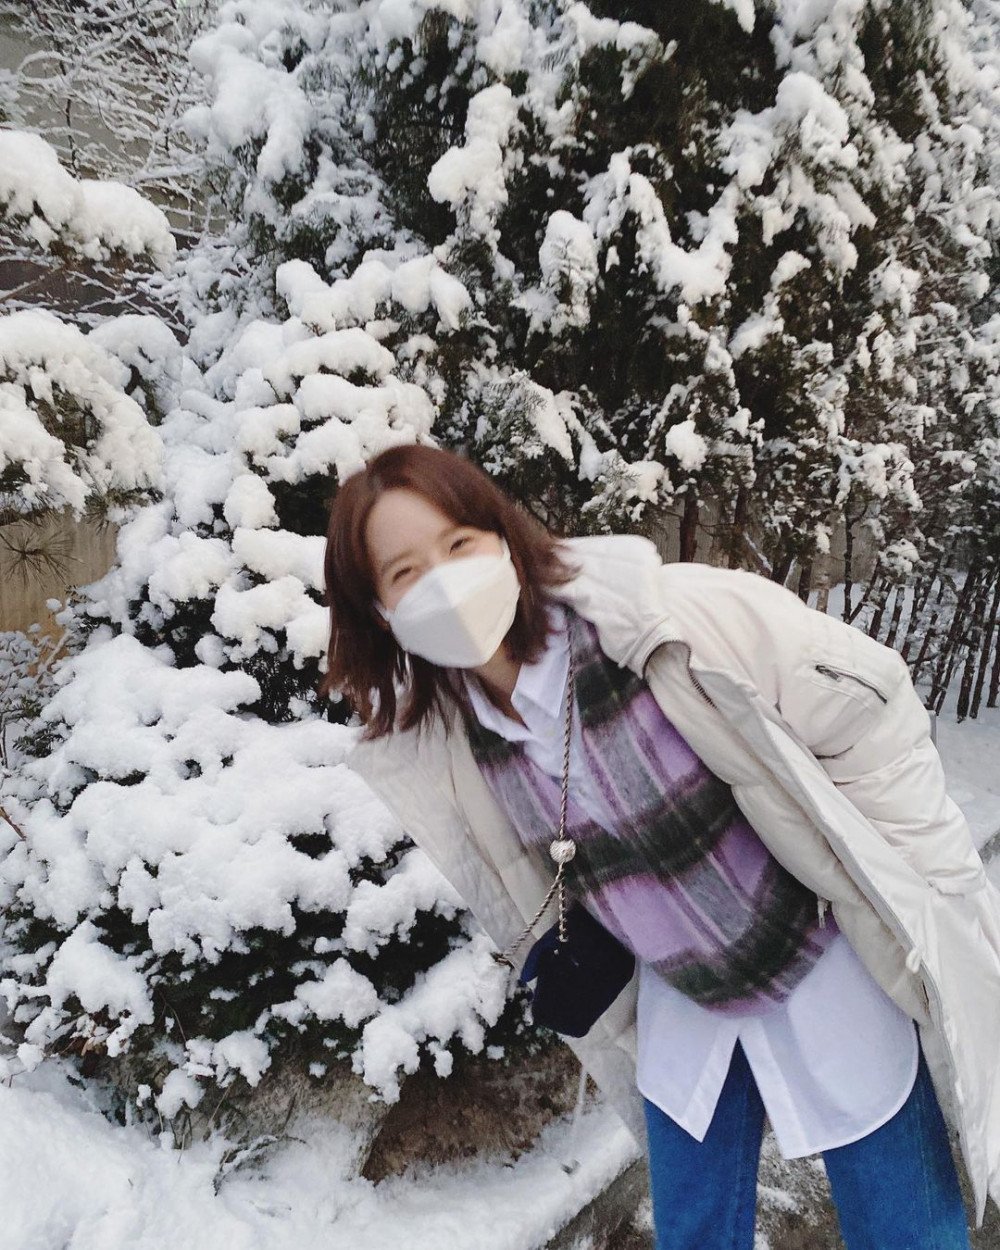 ЮнА из Girls' Generation поделилась фотографиями из зимней страны чудес